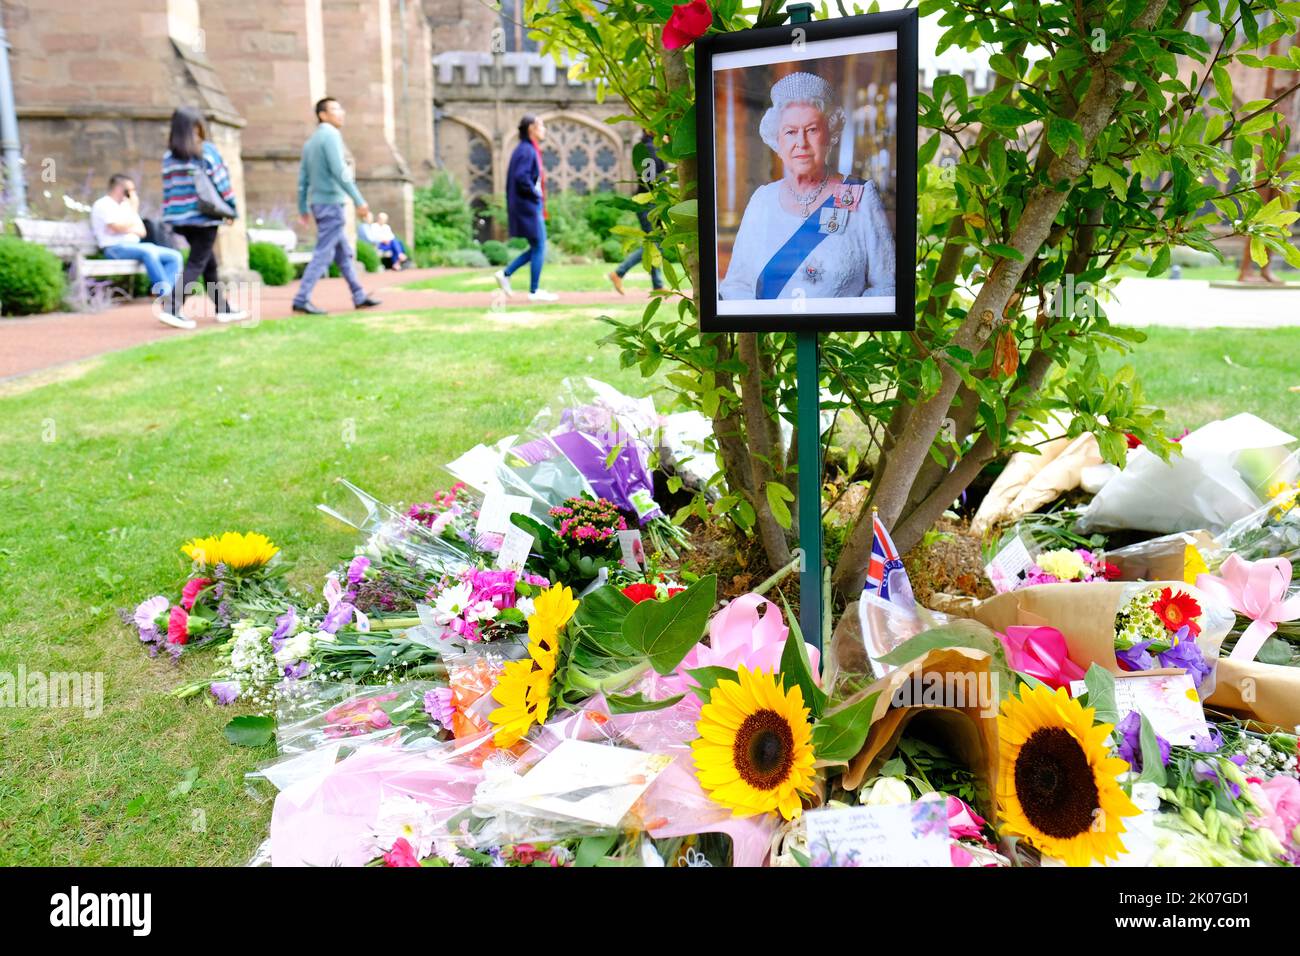 Hereford, Herefordshire, Royaume-Uni - Samedi 10th septembre 2022 - des bouquets de fleurs se trouvent à côté d'un portrait de la reine Elizabeth II dans les jardins de la cathédrale d'Hereford alors que la Grande-Bretagne pleure la mort du monarque. Photo Steven May / Alamy Live News Banque D'Images